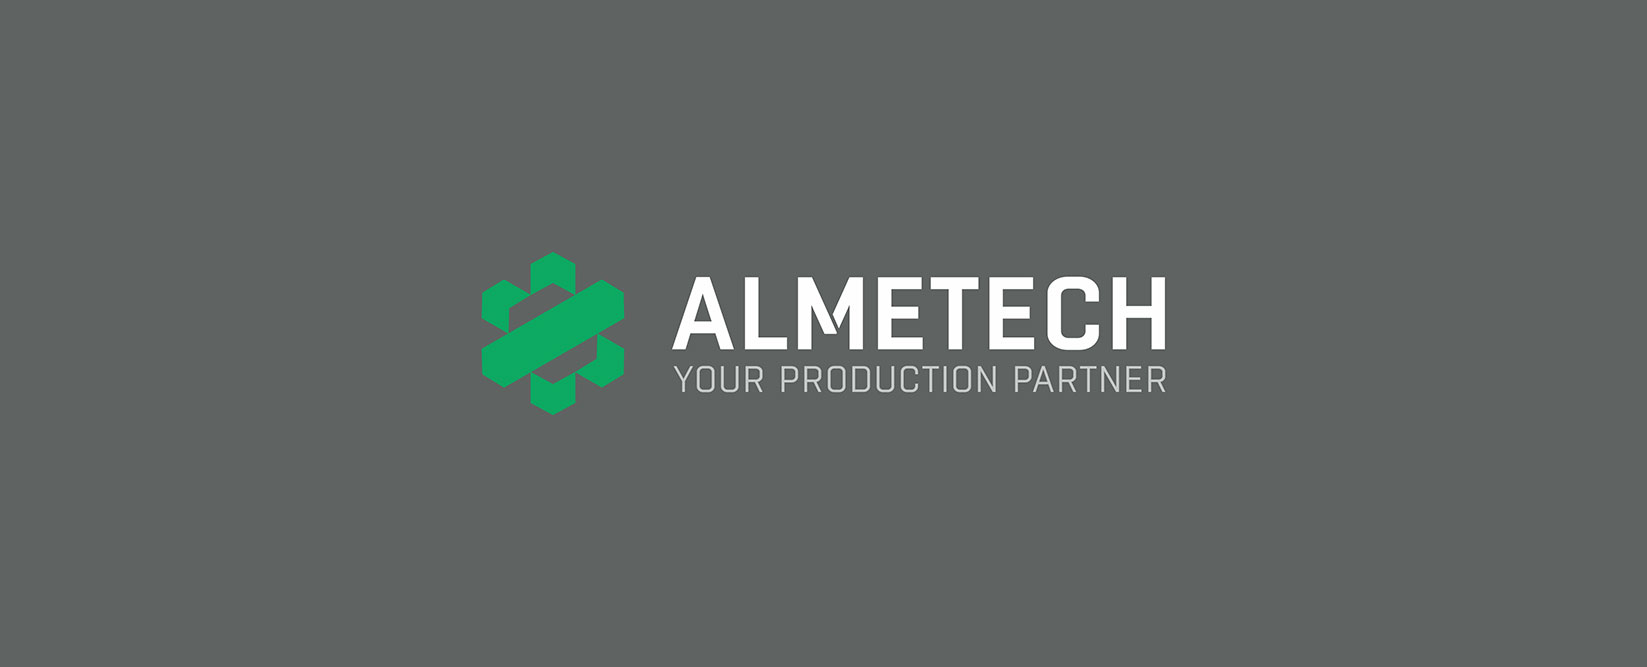 Almatech-logo